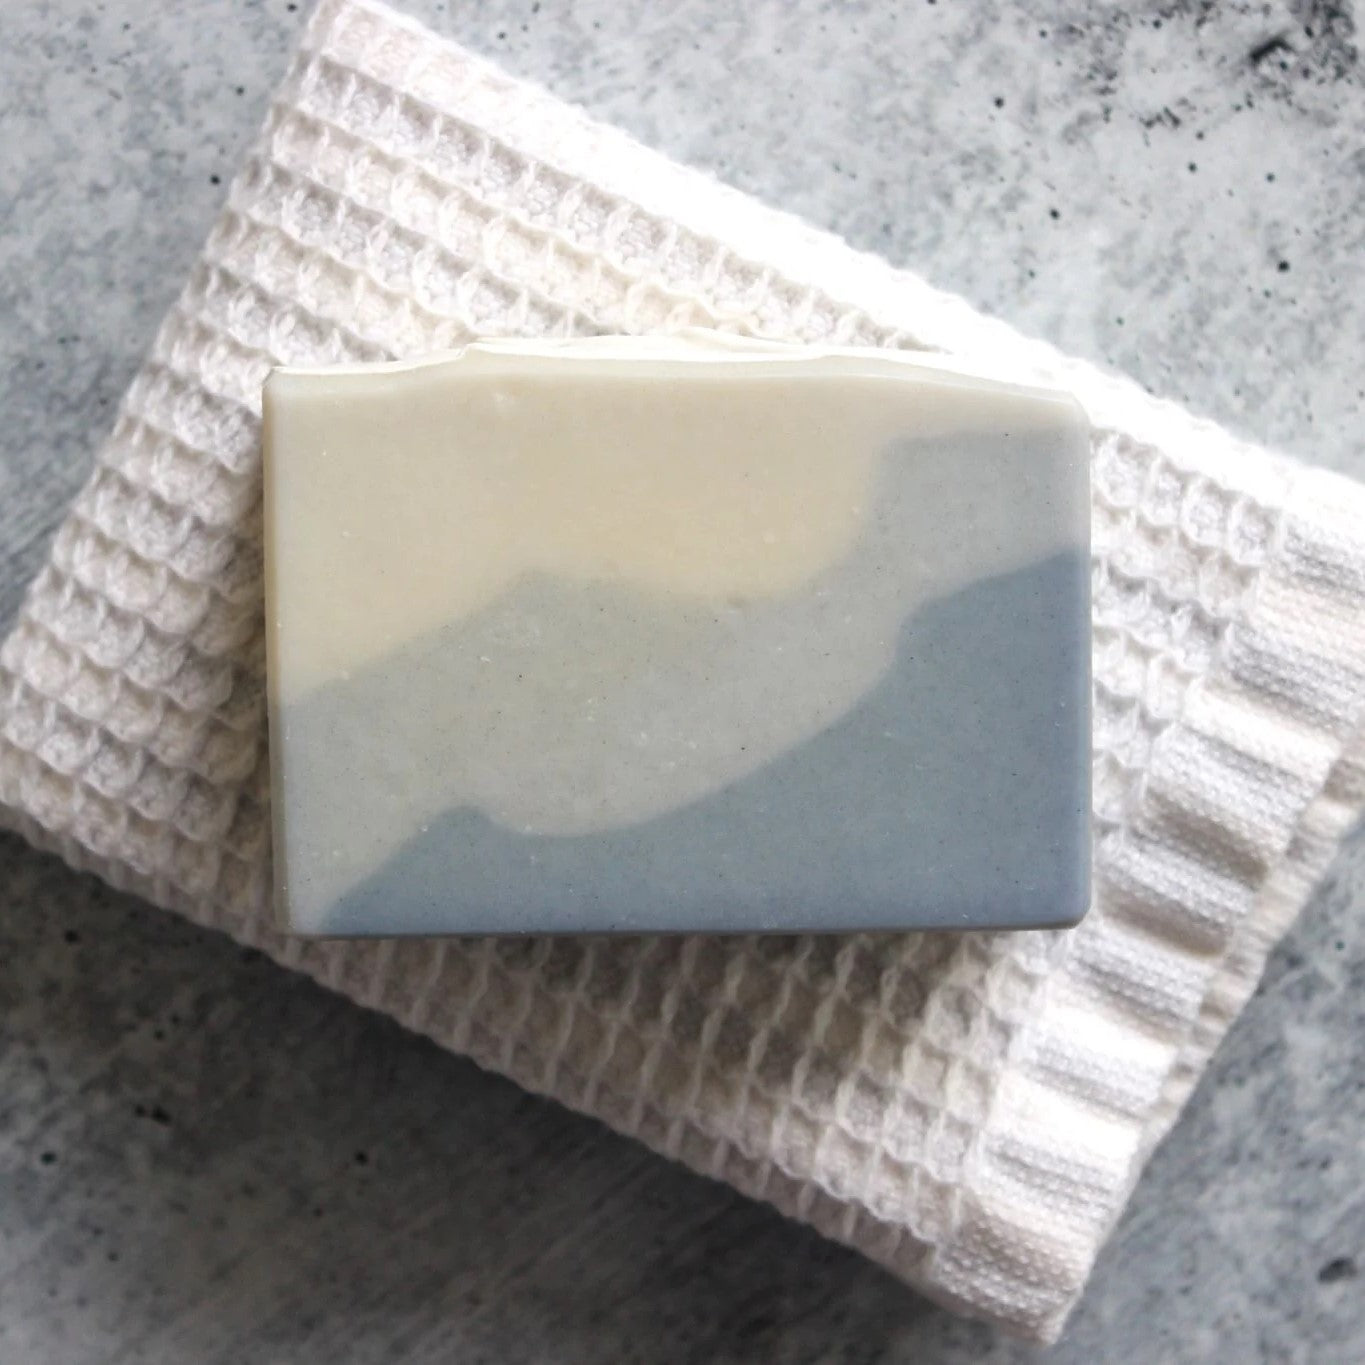 Orange Soap | Honey Soap | Coconut Milk Soap